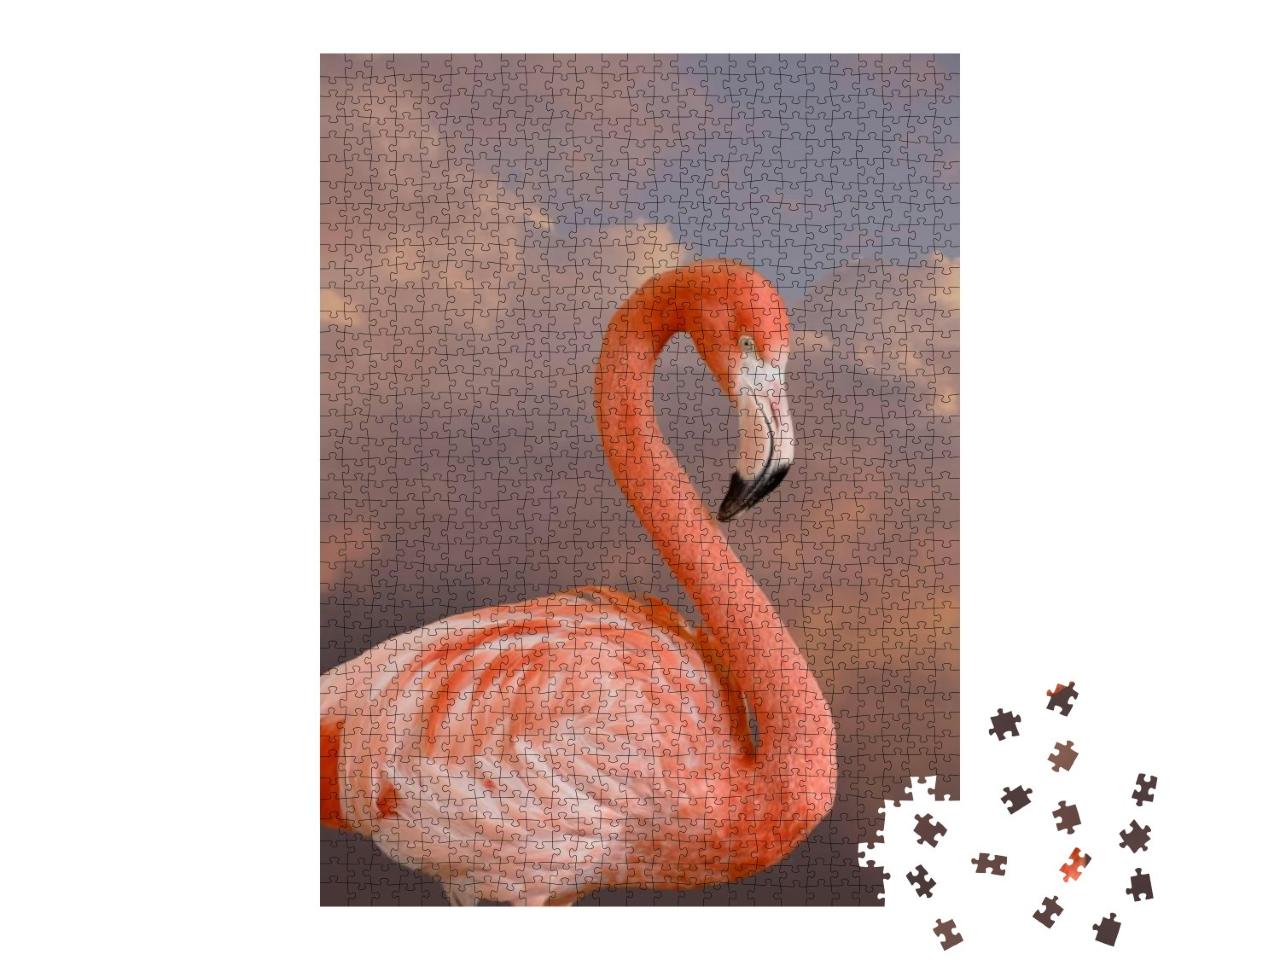 Puzzle 1000 Teile „Amerikanischer Flamingo“